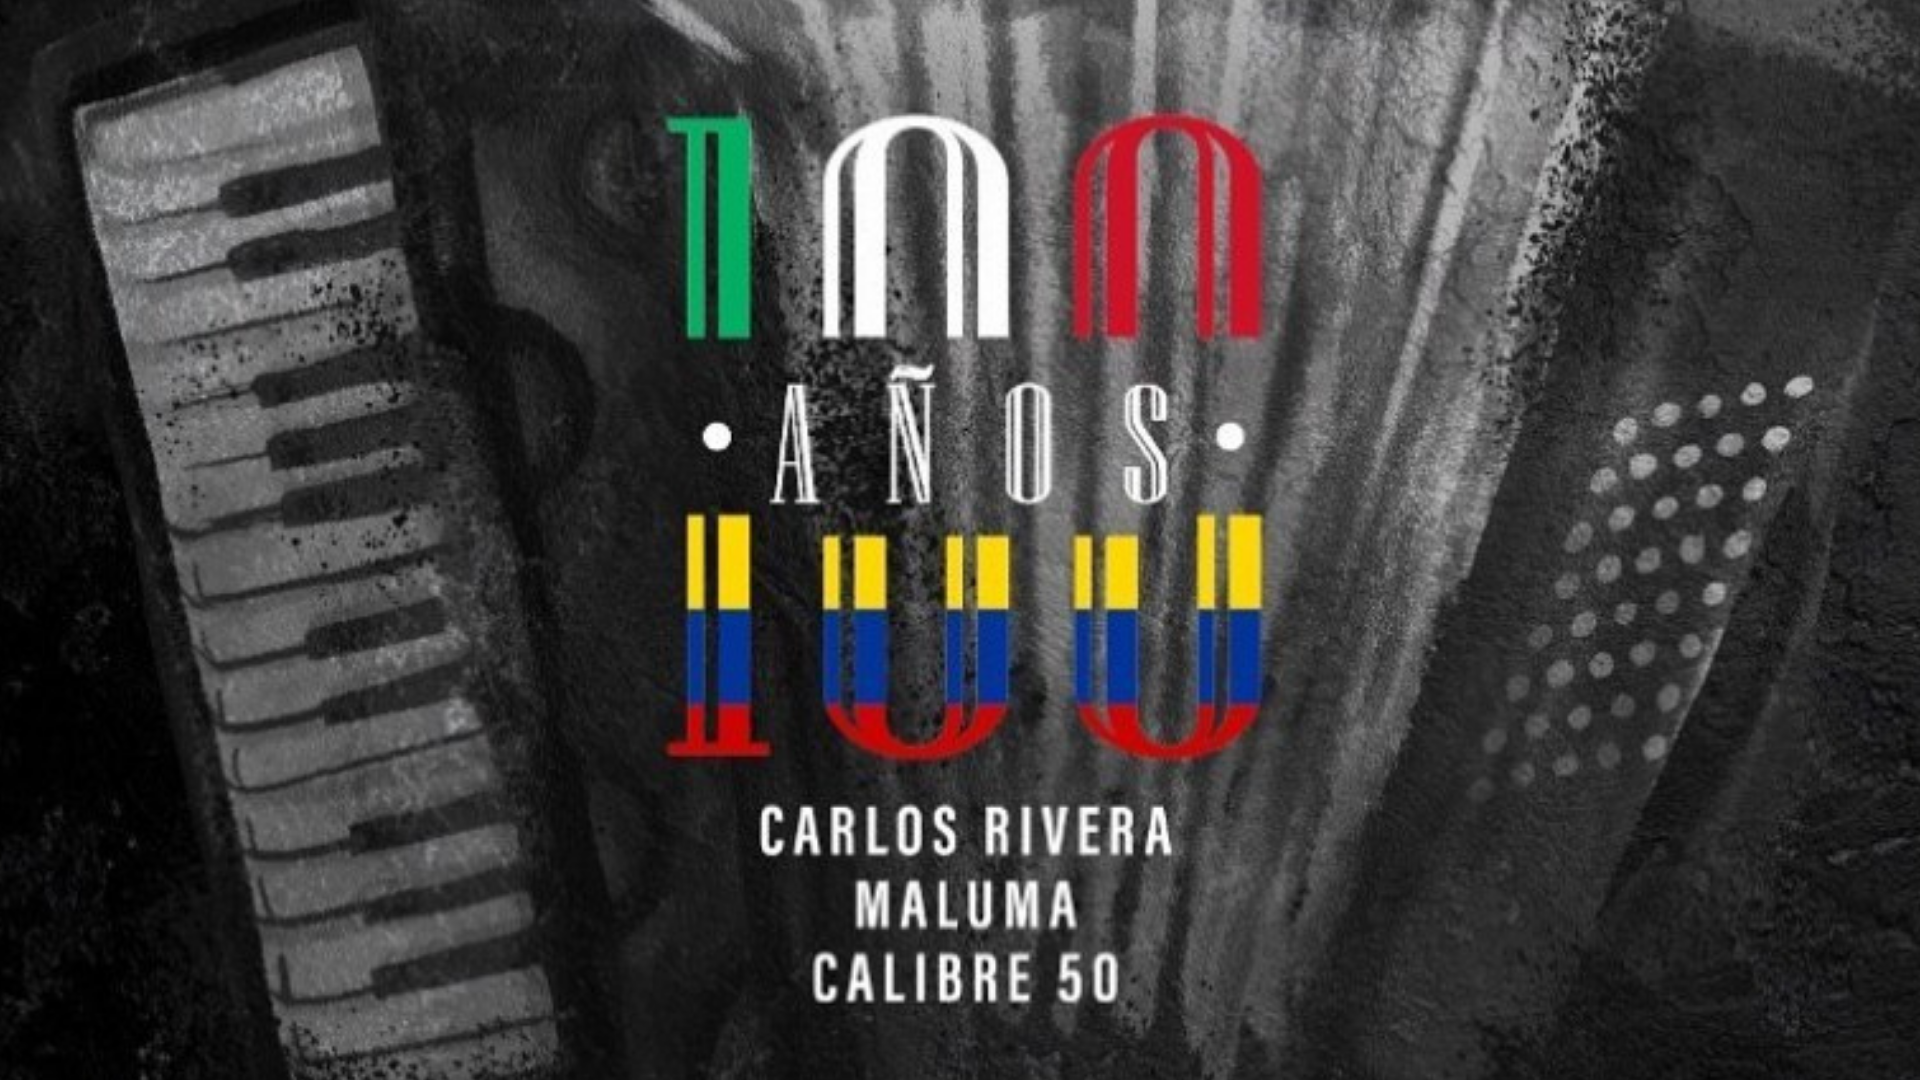 Calibre 50 estrena remix "100 años" con Maluma y Carlos Rivera